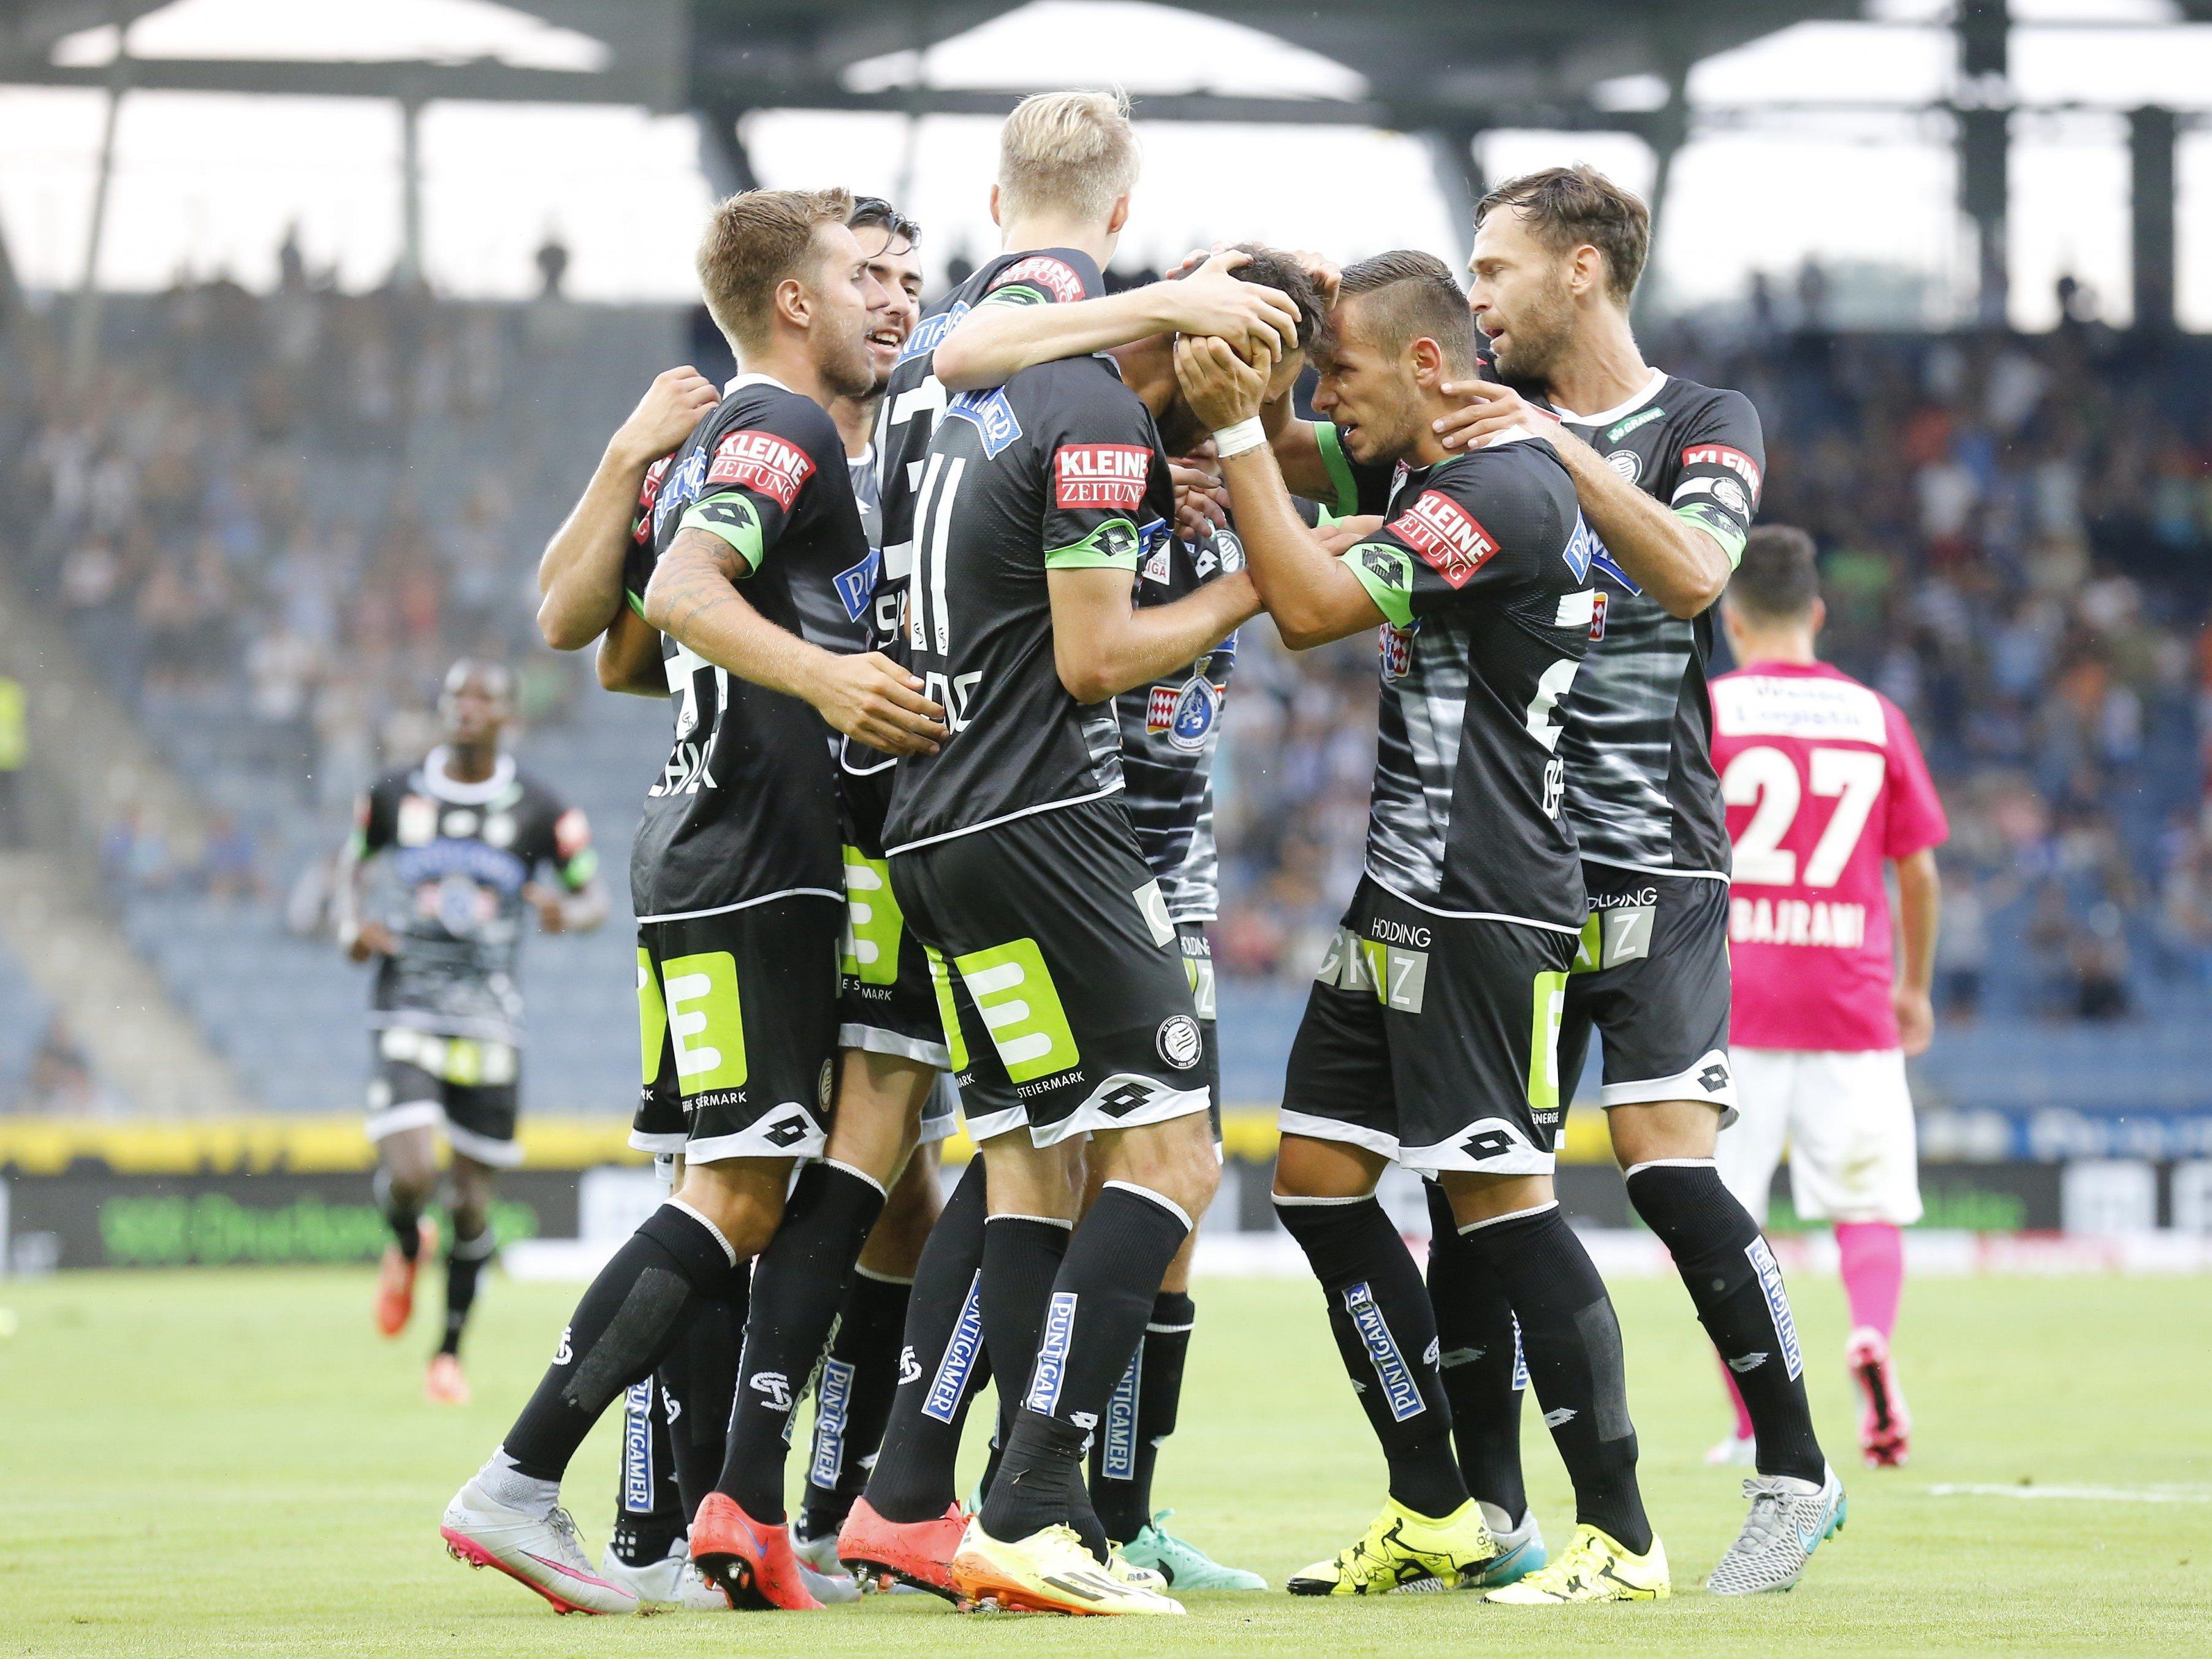 LIVE-Ticker zum Spiel FC Admira Wacker Mödling gegen SK Sturm Graz ab 16.30 Uhr.